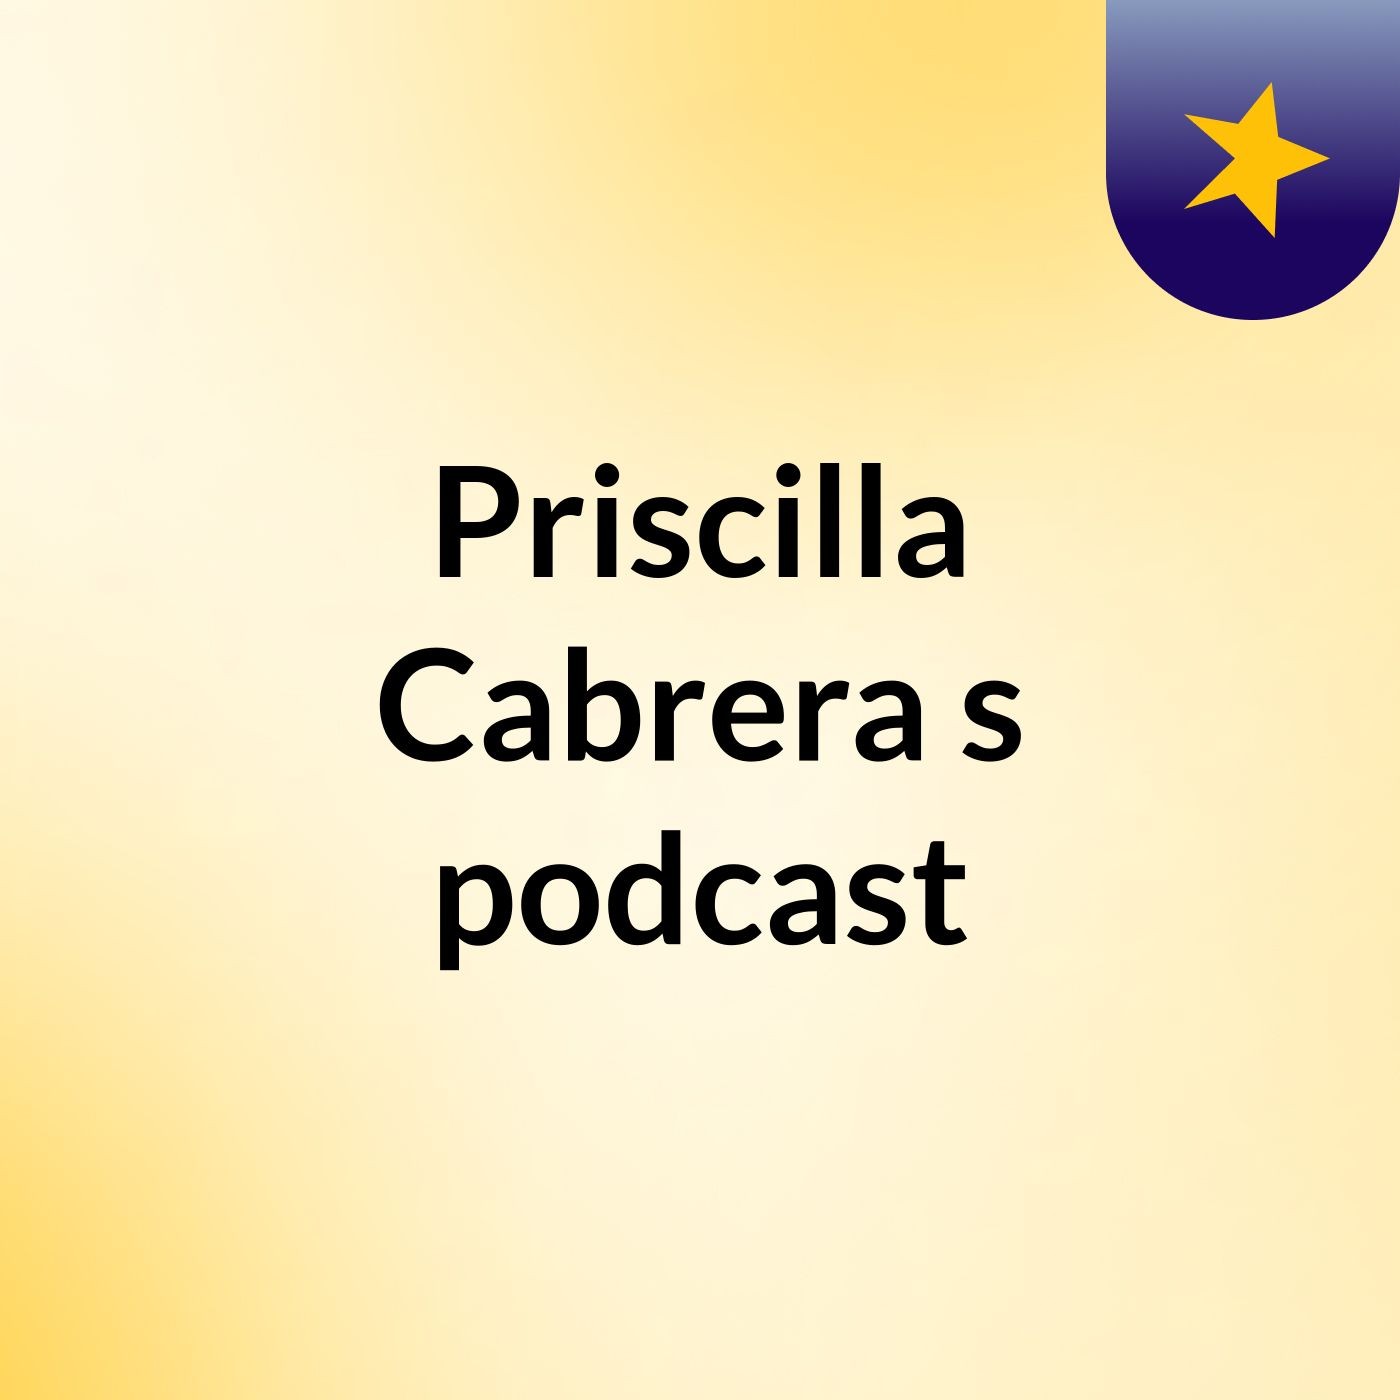 Episode 4 - Priscilla Cabrera's podcast